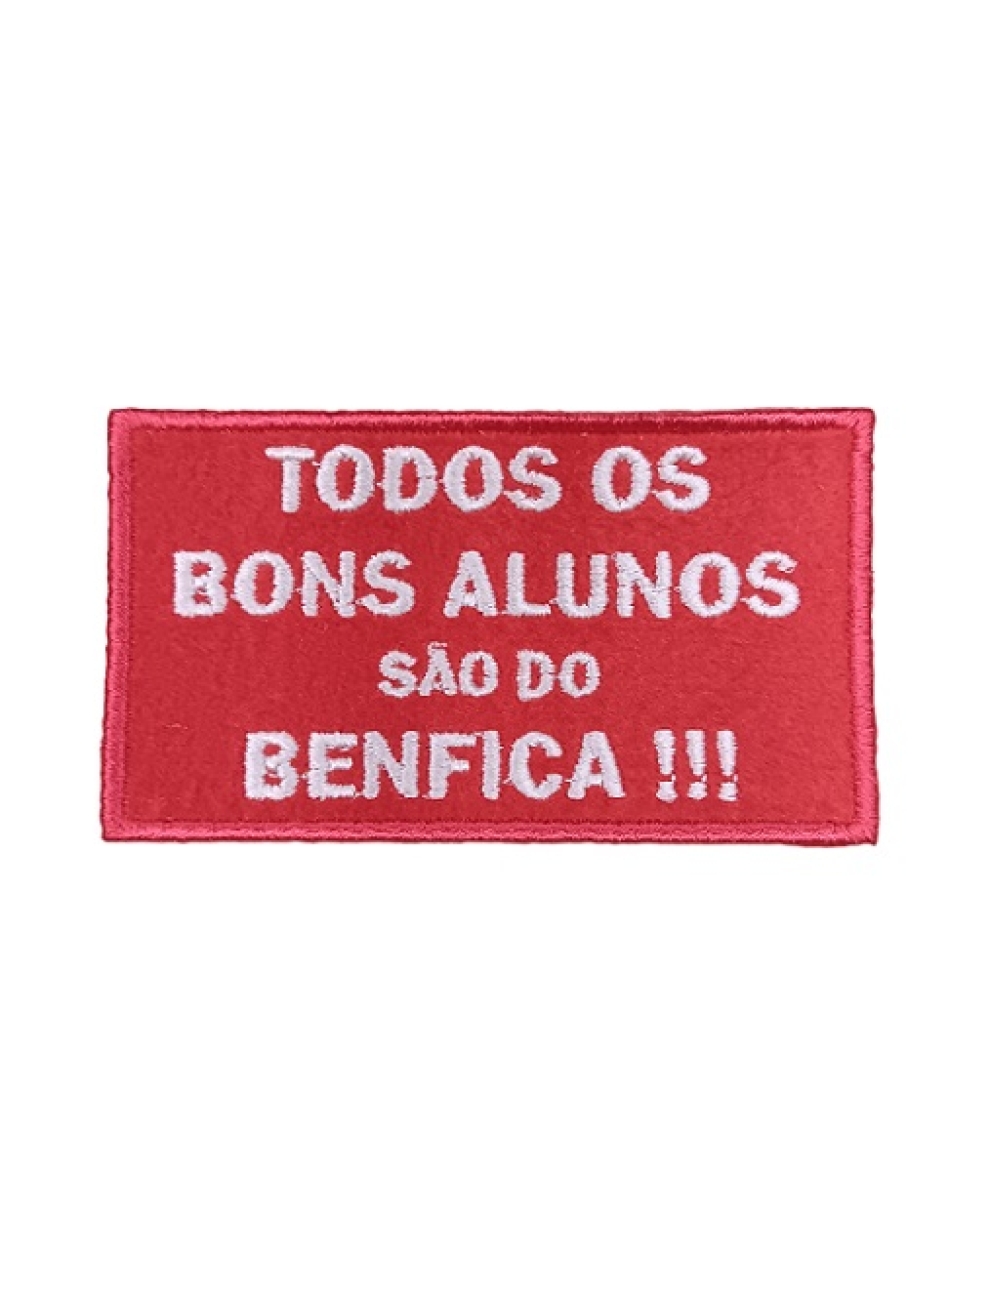 Todos os bons alunos são do Benfica!!!